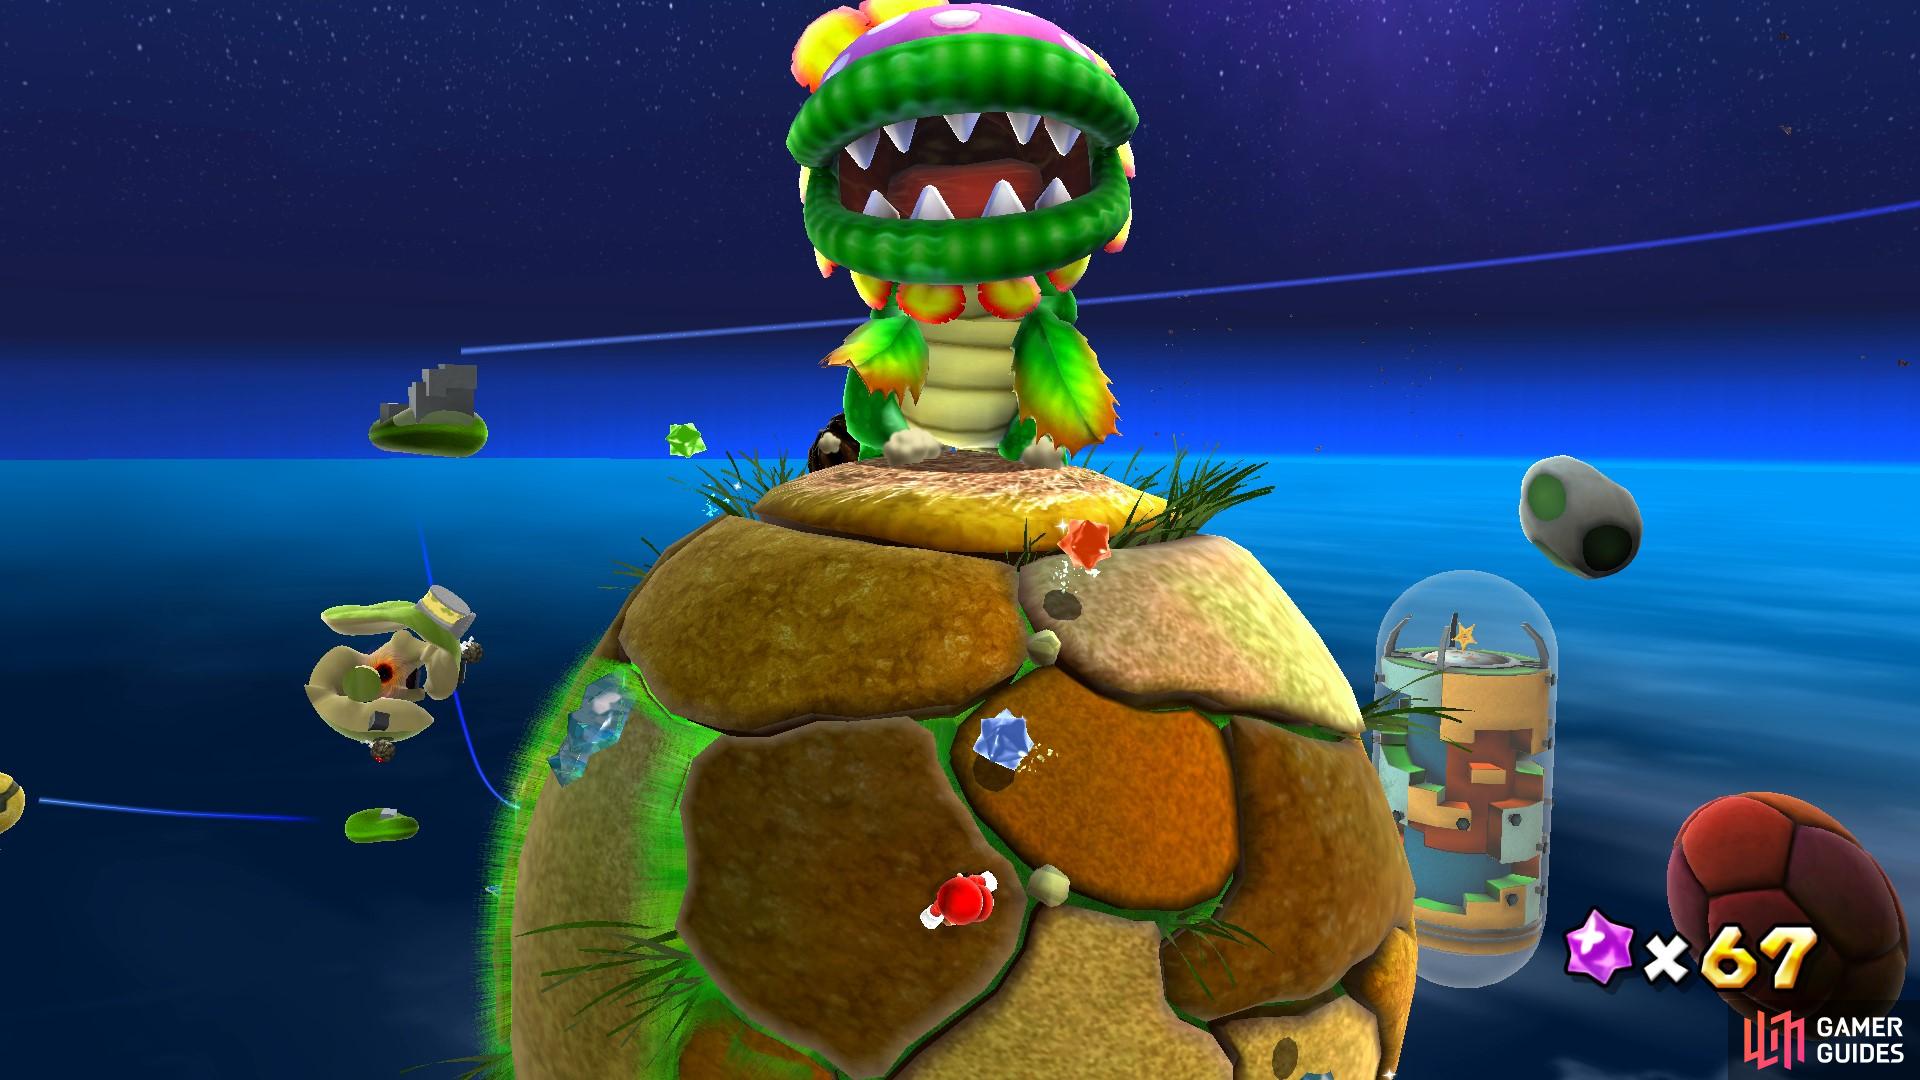 The Dino Piranha will run at Mario to bite him.